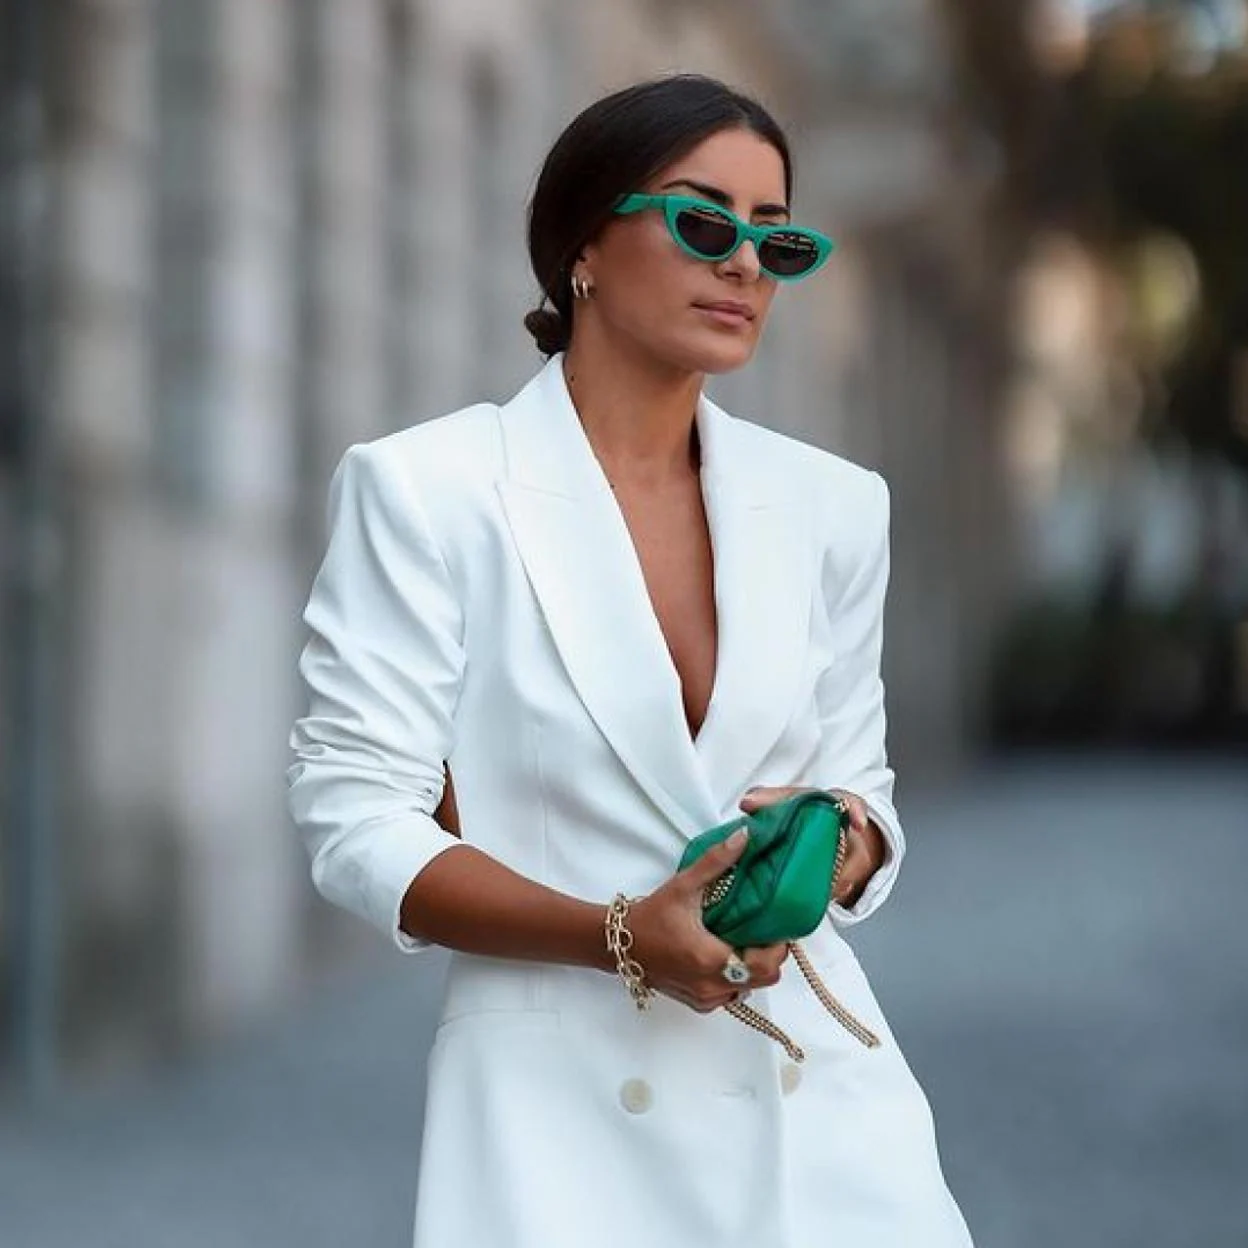 El original de chaqueta de Zara perfecto para arrasar: blanco, barato y con a la espalda estiloso | Mujer Hoy